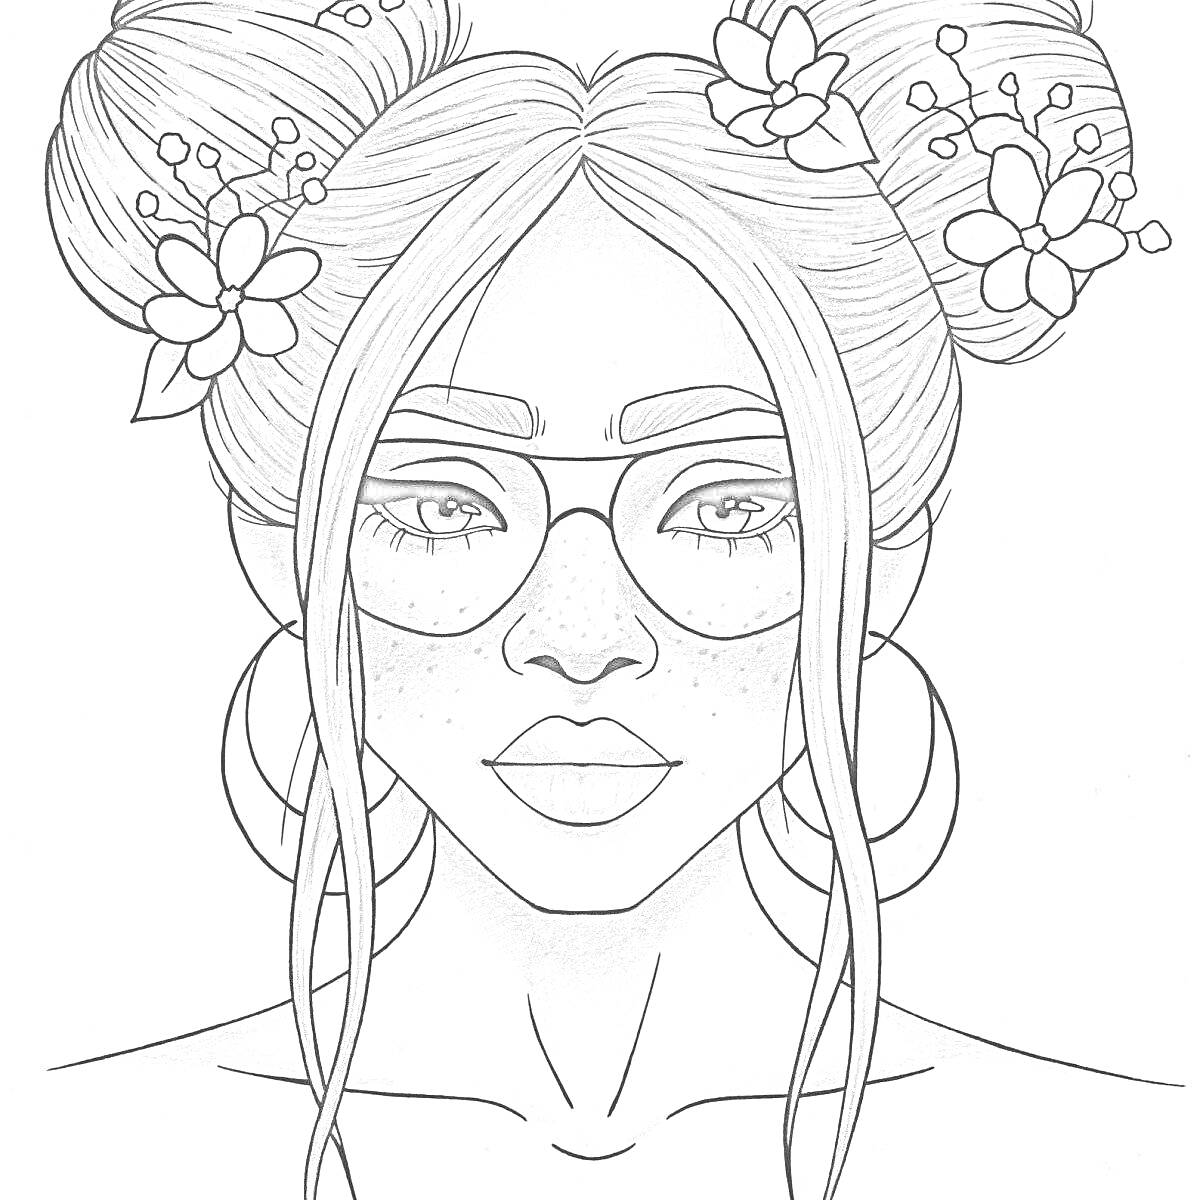 Девушка с двумя пучками, цветами в волосах и большими кольцами в ушах, на лице очки и веснушки